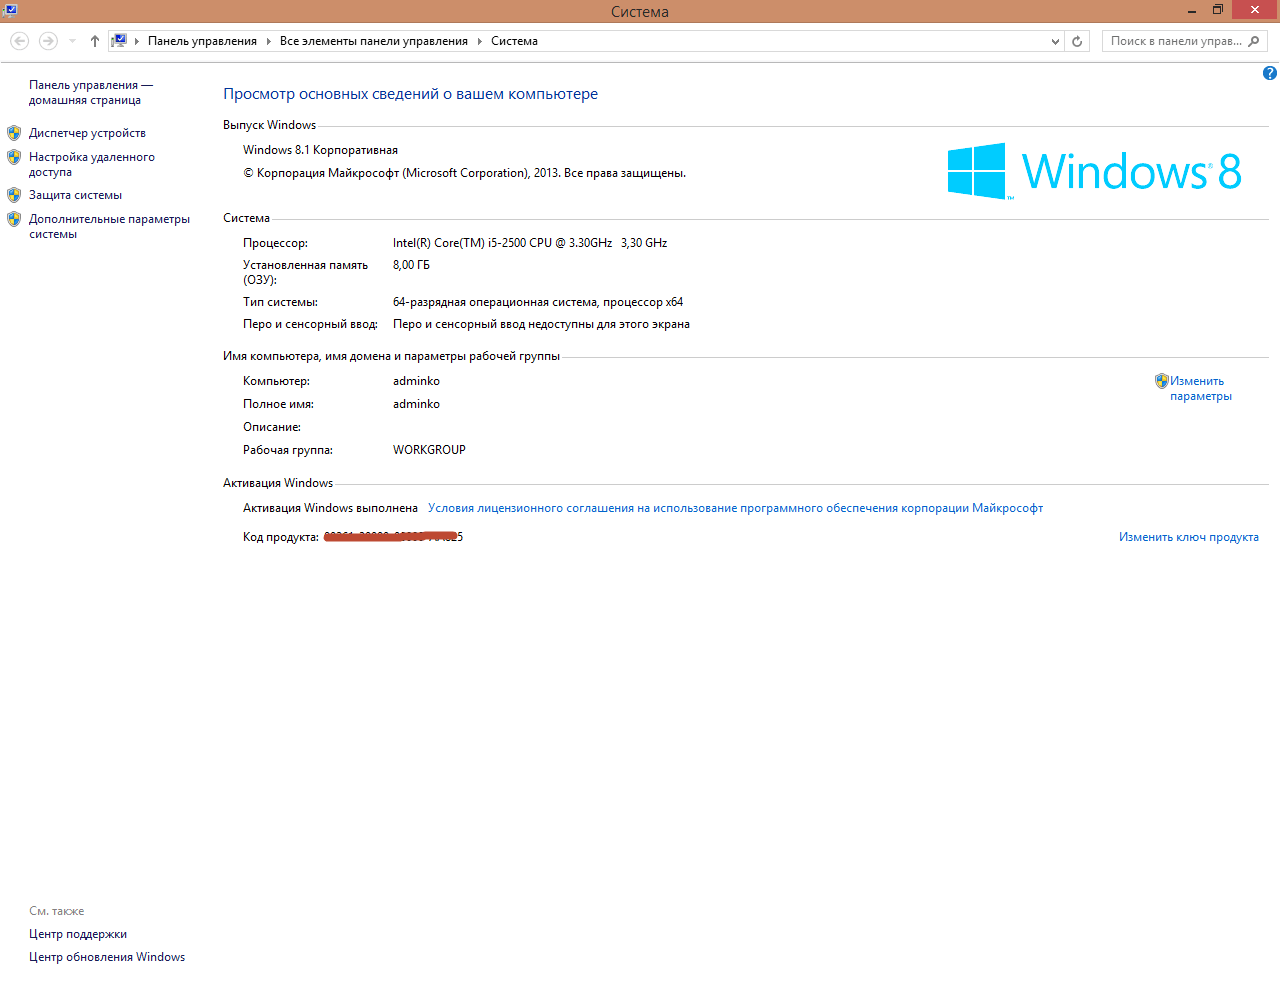 Как создать точку восстановления Windows в Windows 8.1-03